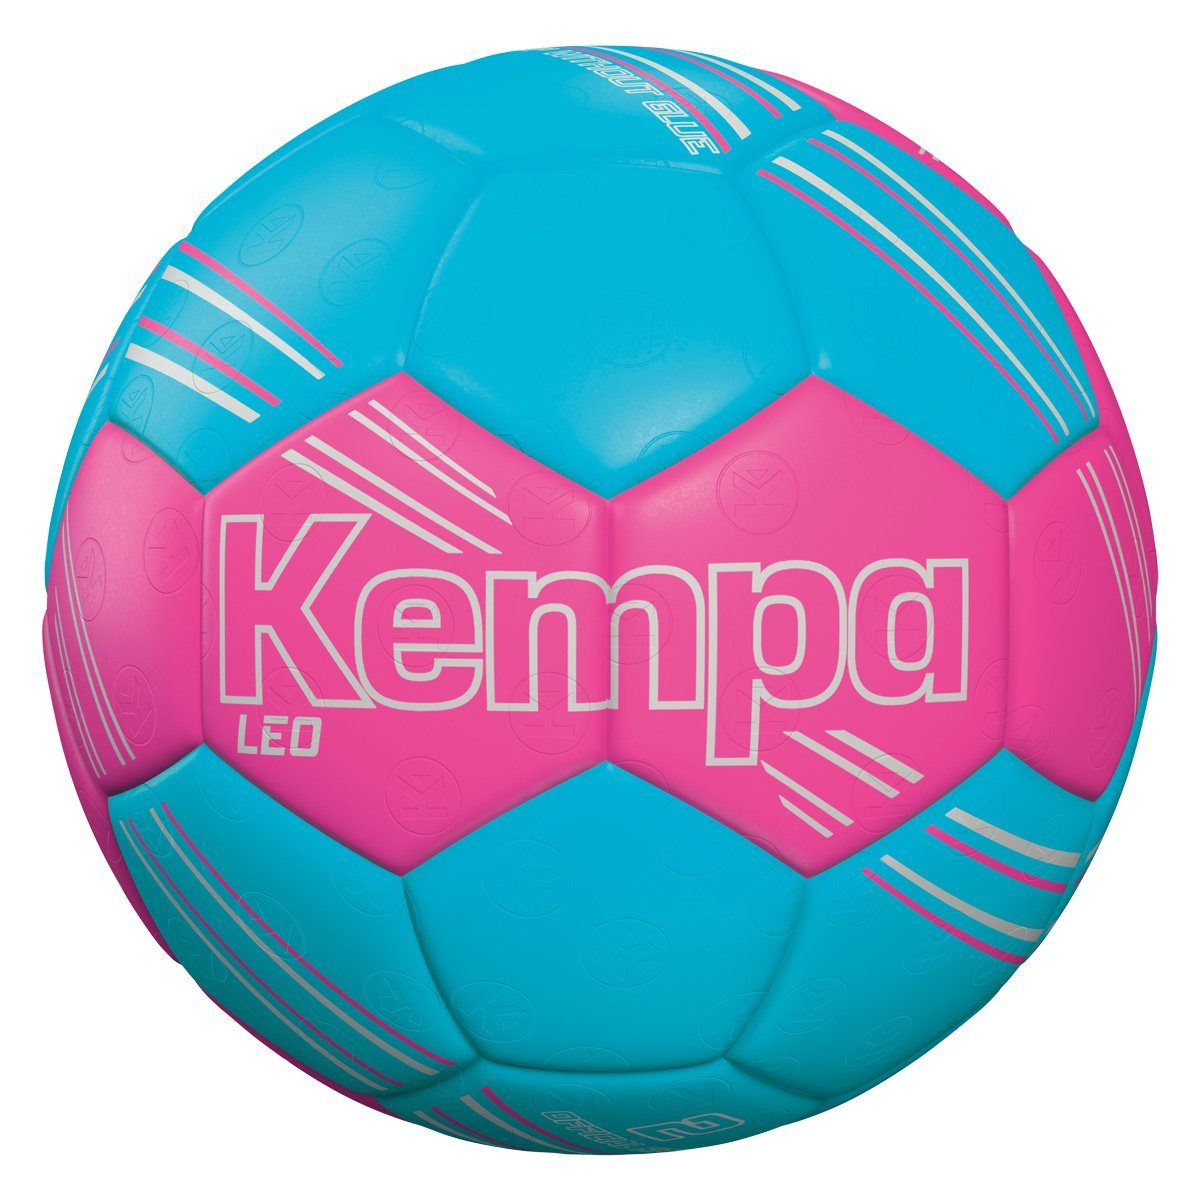 Kempa Handball Kempa Handball LEO pink/aqua | Fußbälle